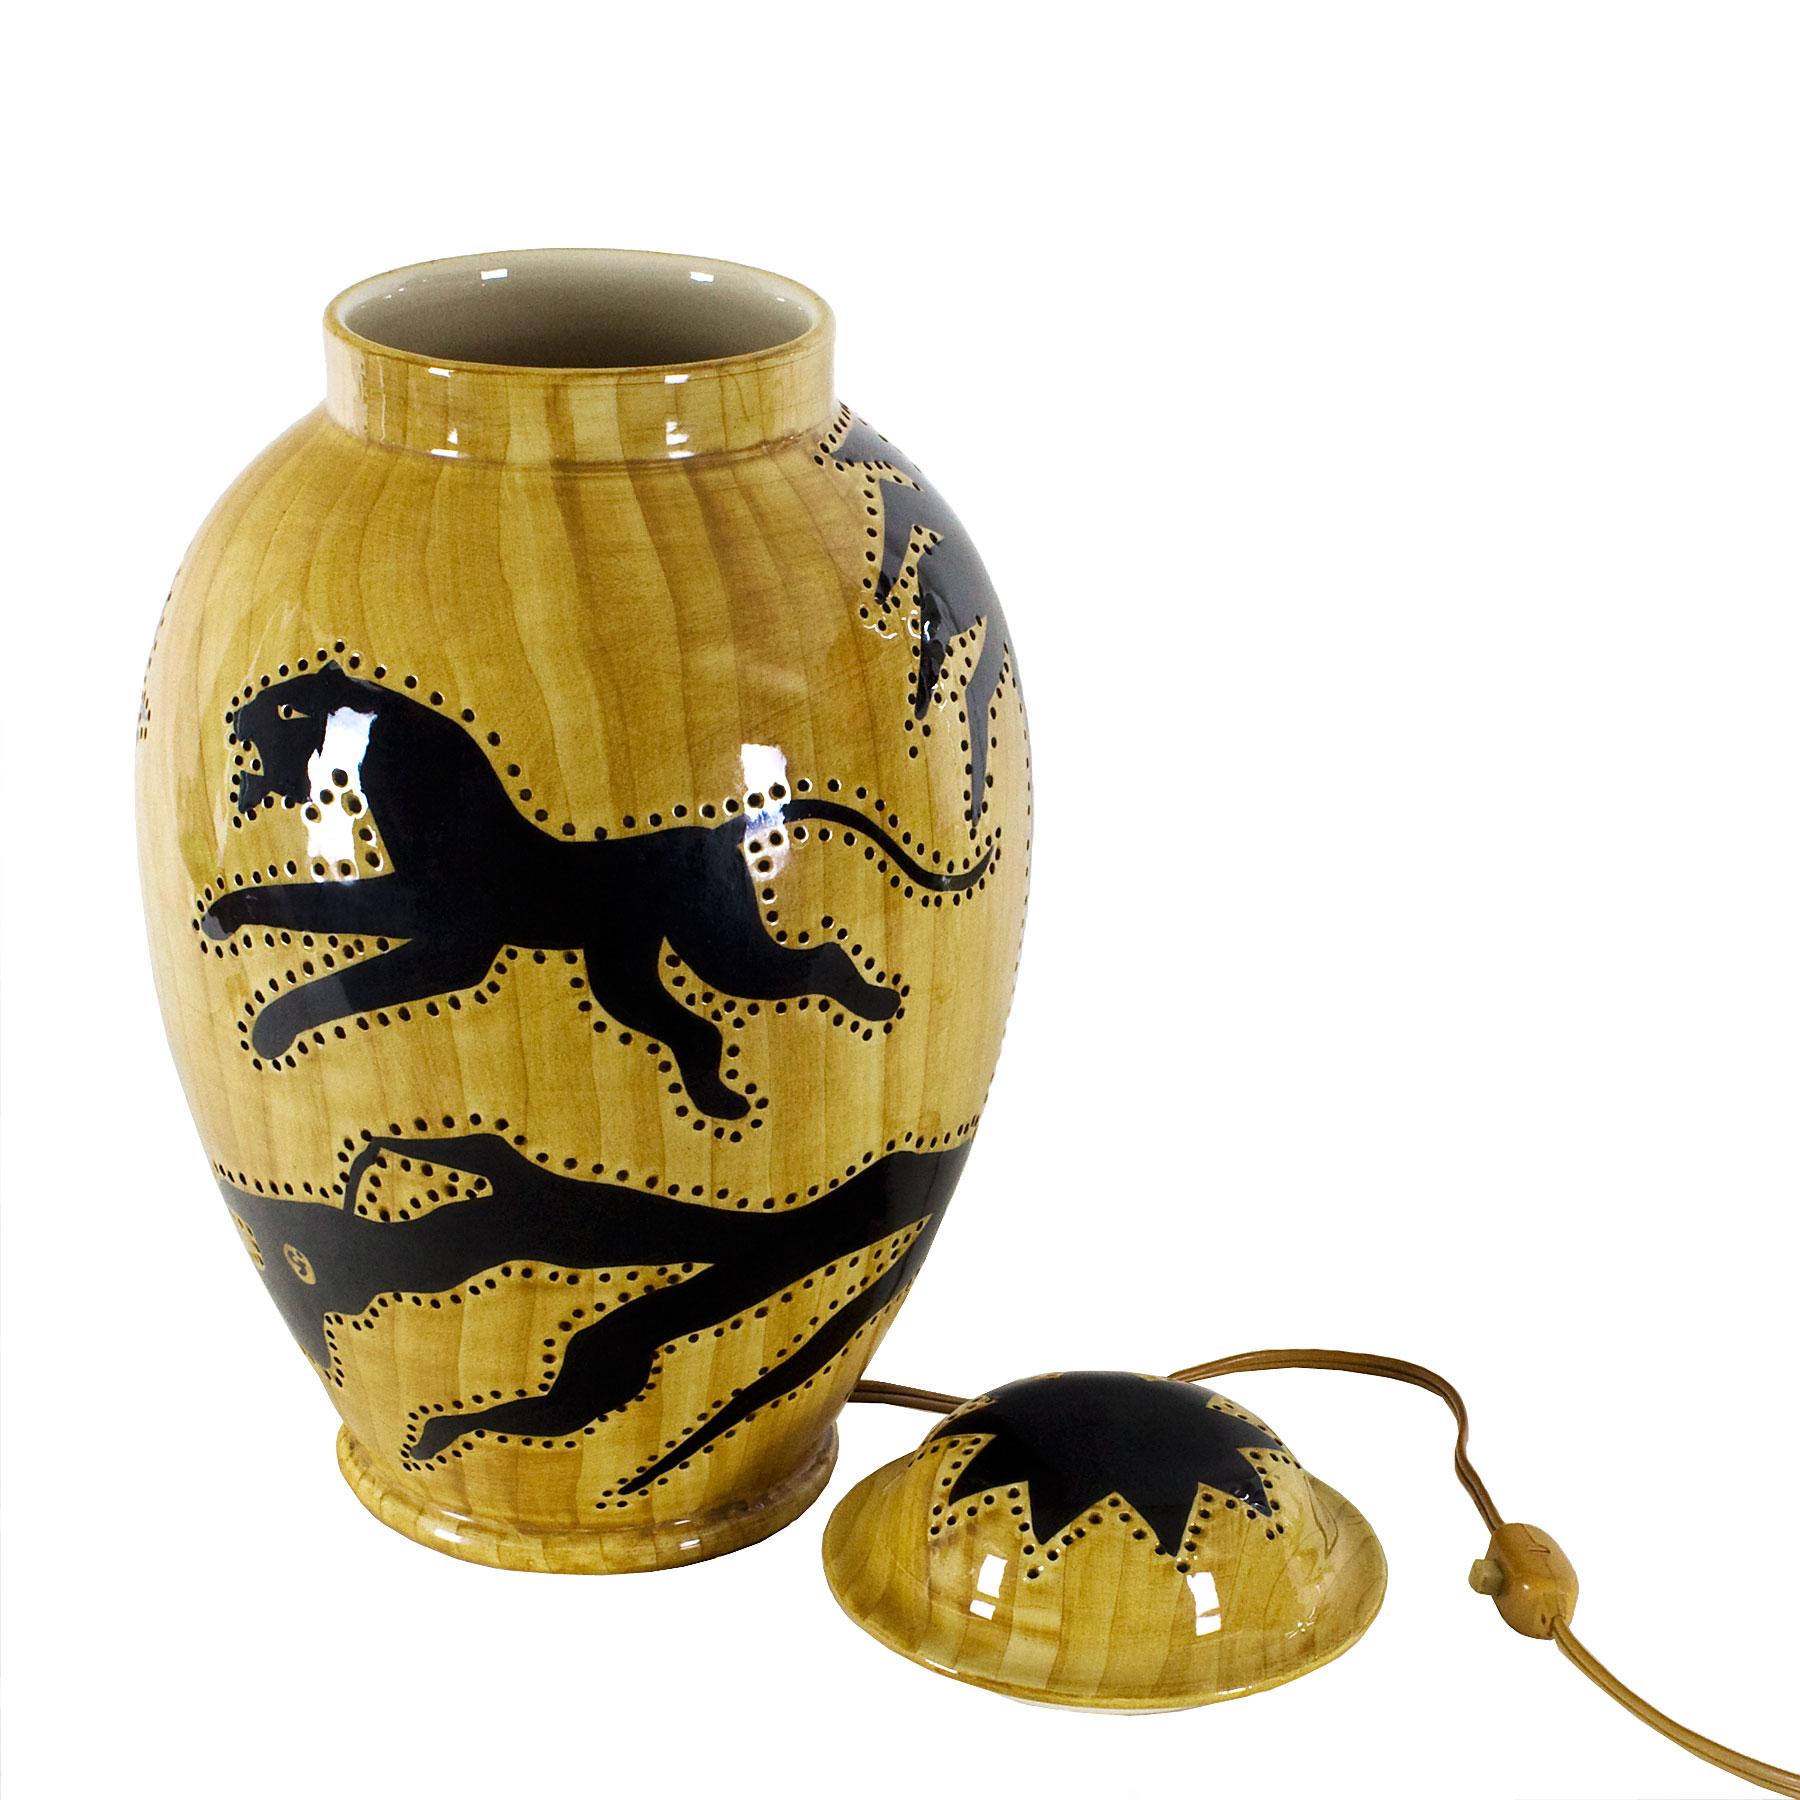 Enameled 1950s Covered Pot Lamp by Grandjean-Jourdan, Perforated Ceramic, Vallauris